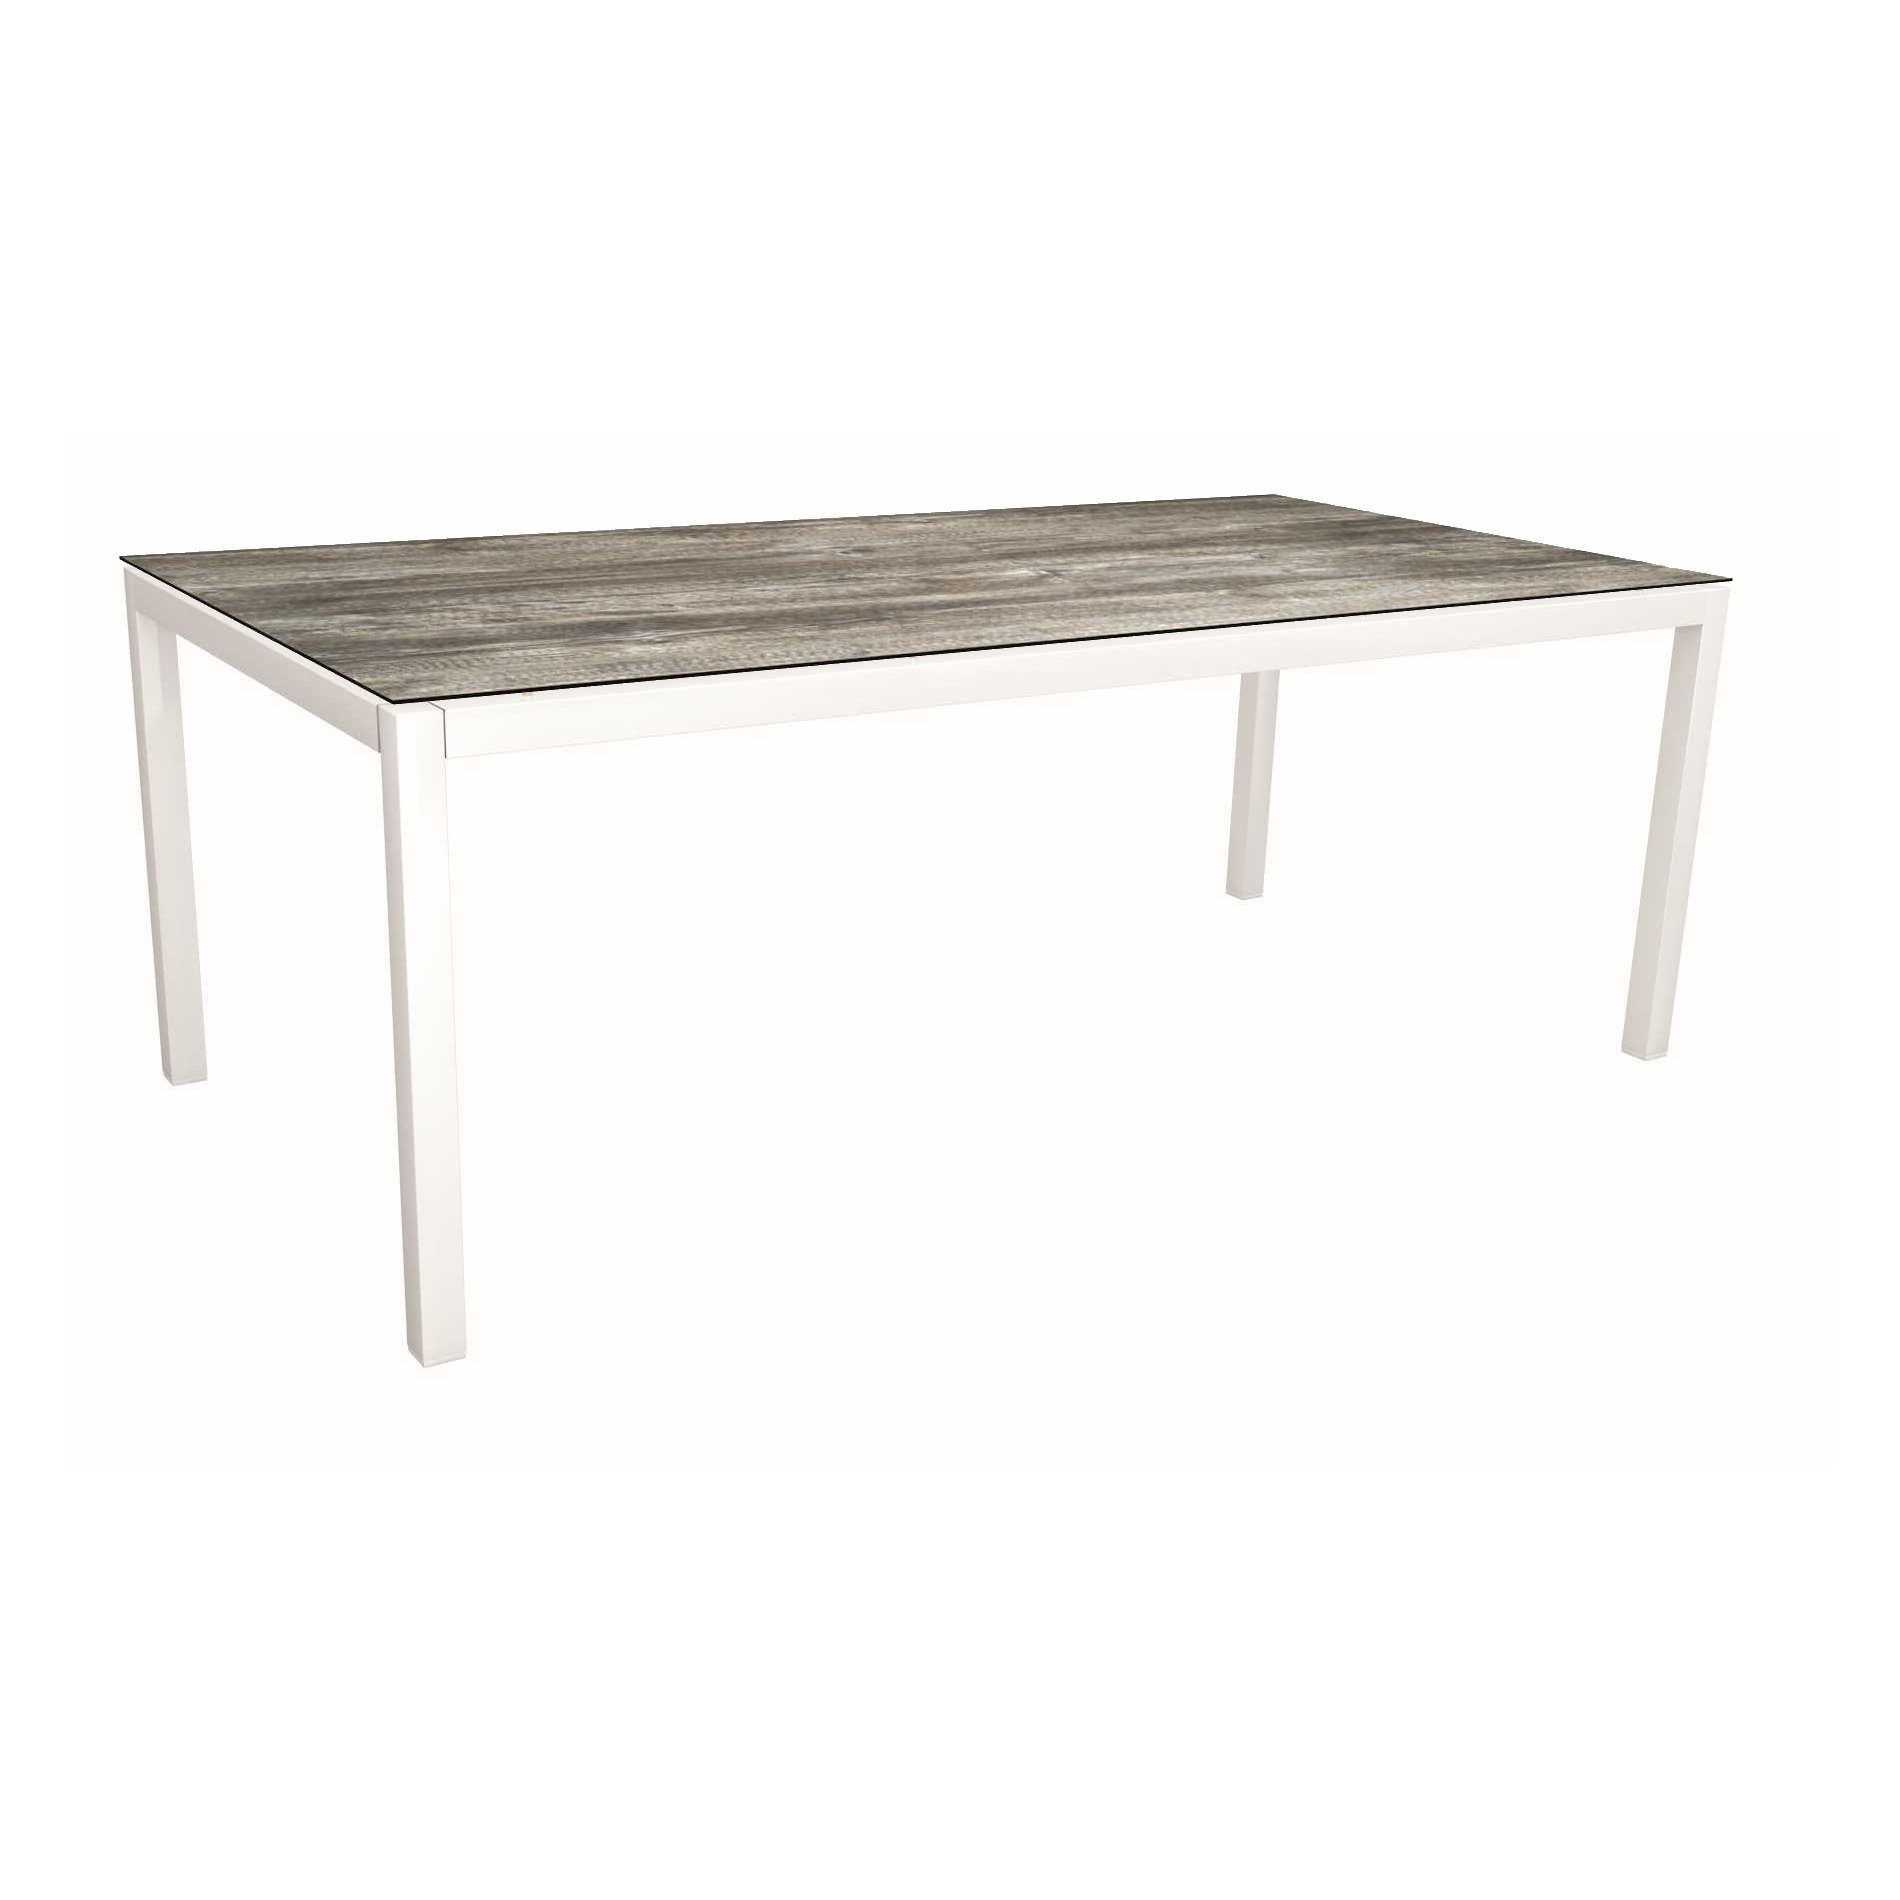 Stern Tischsystem, Gestell Aluminium weiß, Tischplatte HPL Tundra grau, Größe: 200x100 cm